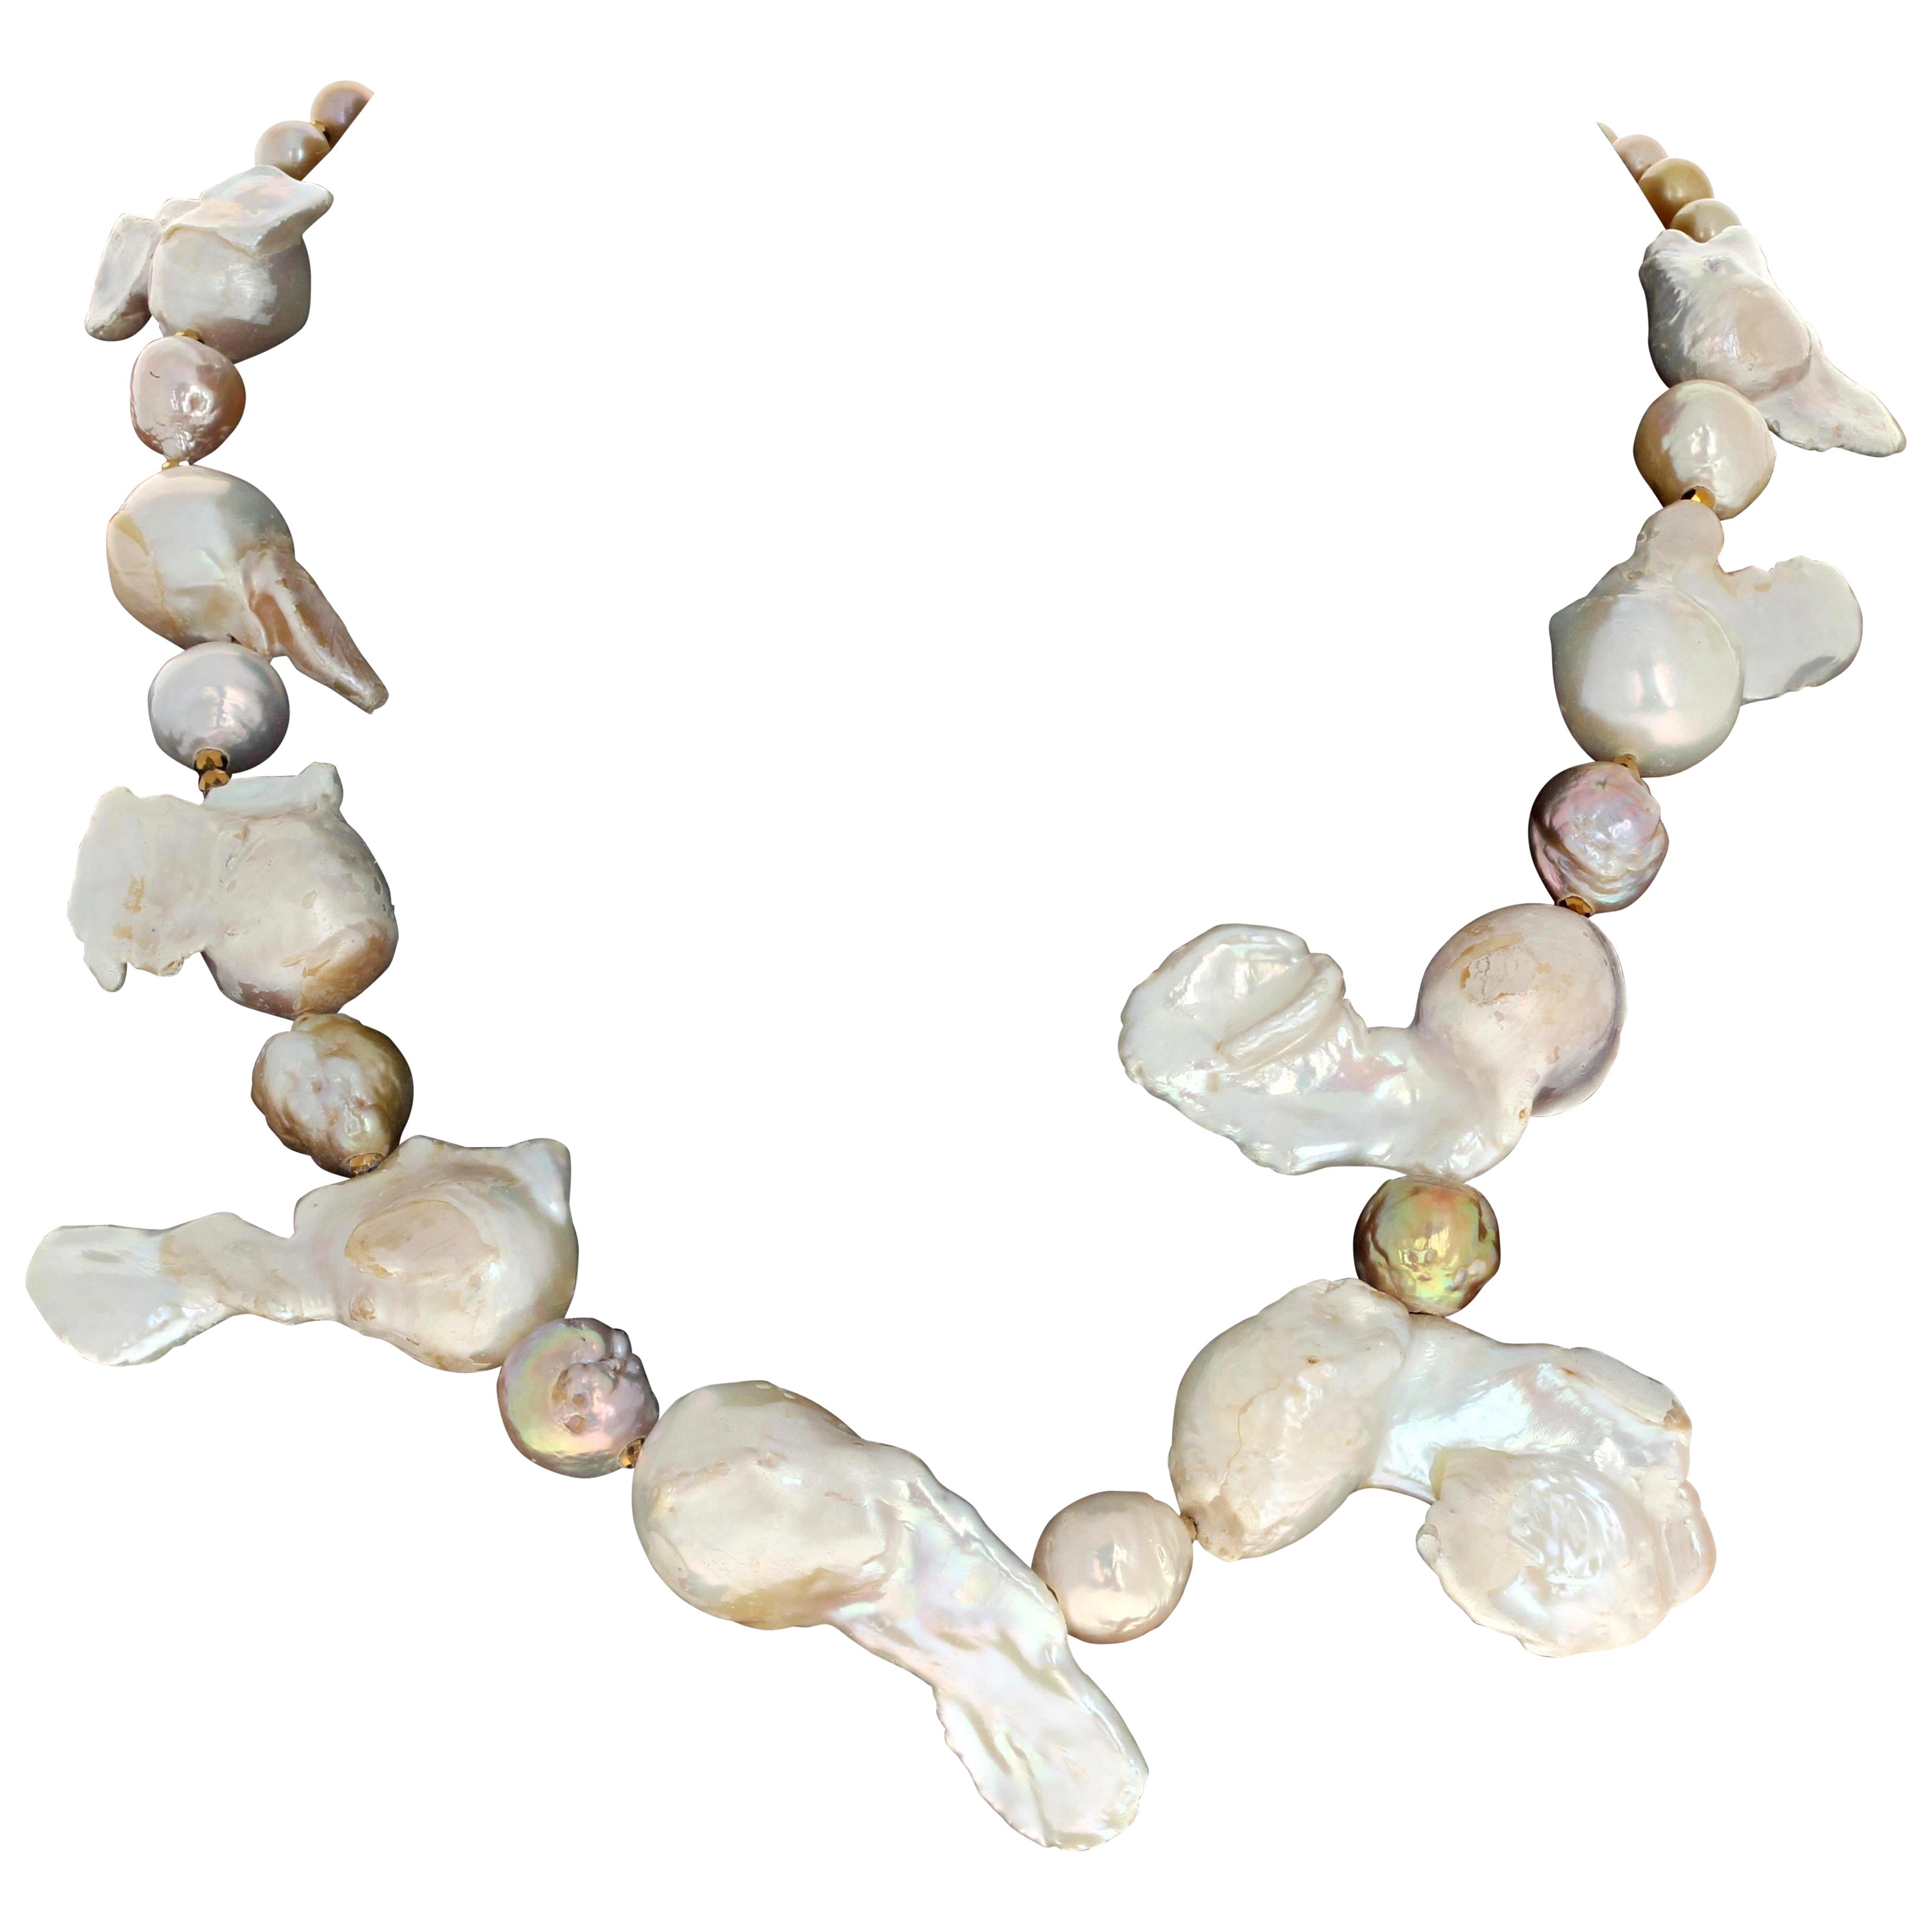 Diese faszinierende Halskette ist 18 1/2 Zoll lang.  Die Perlen sind so natürlich, wie sie in ihren natürlichen Schalen gewachsen sind, so merkwürdig dramatisch.  Die runden Teile sind ca. 18mm und ca. 40mm lang.  Die kleineren Perlen sind ca. 6